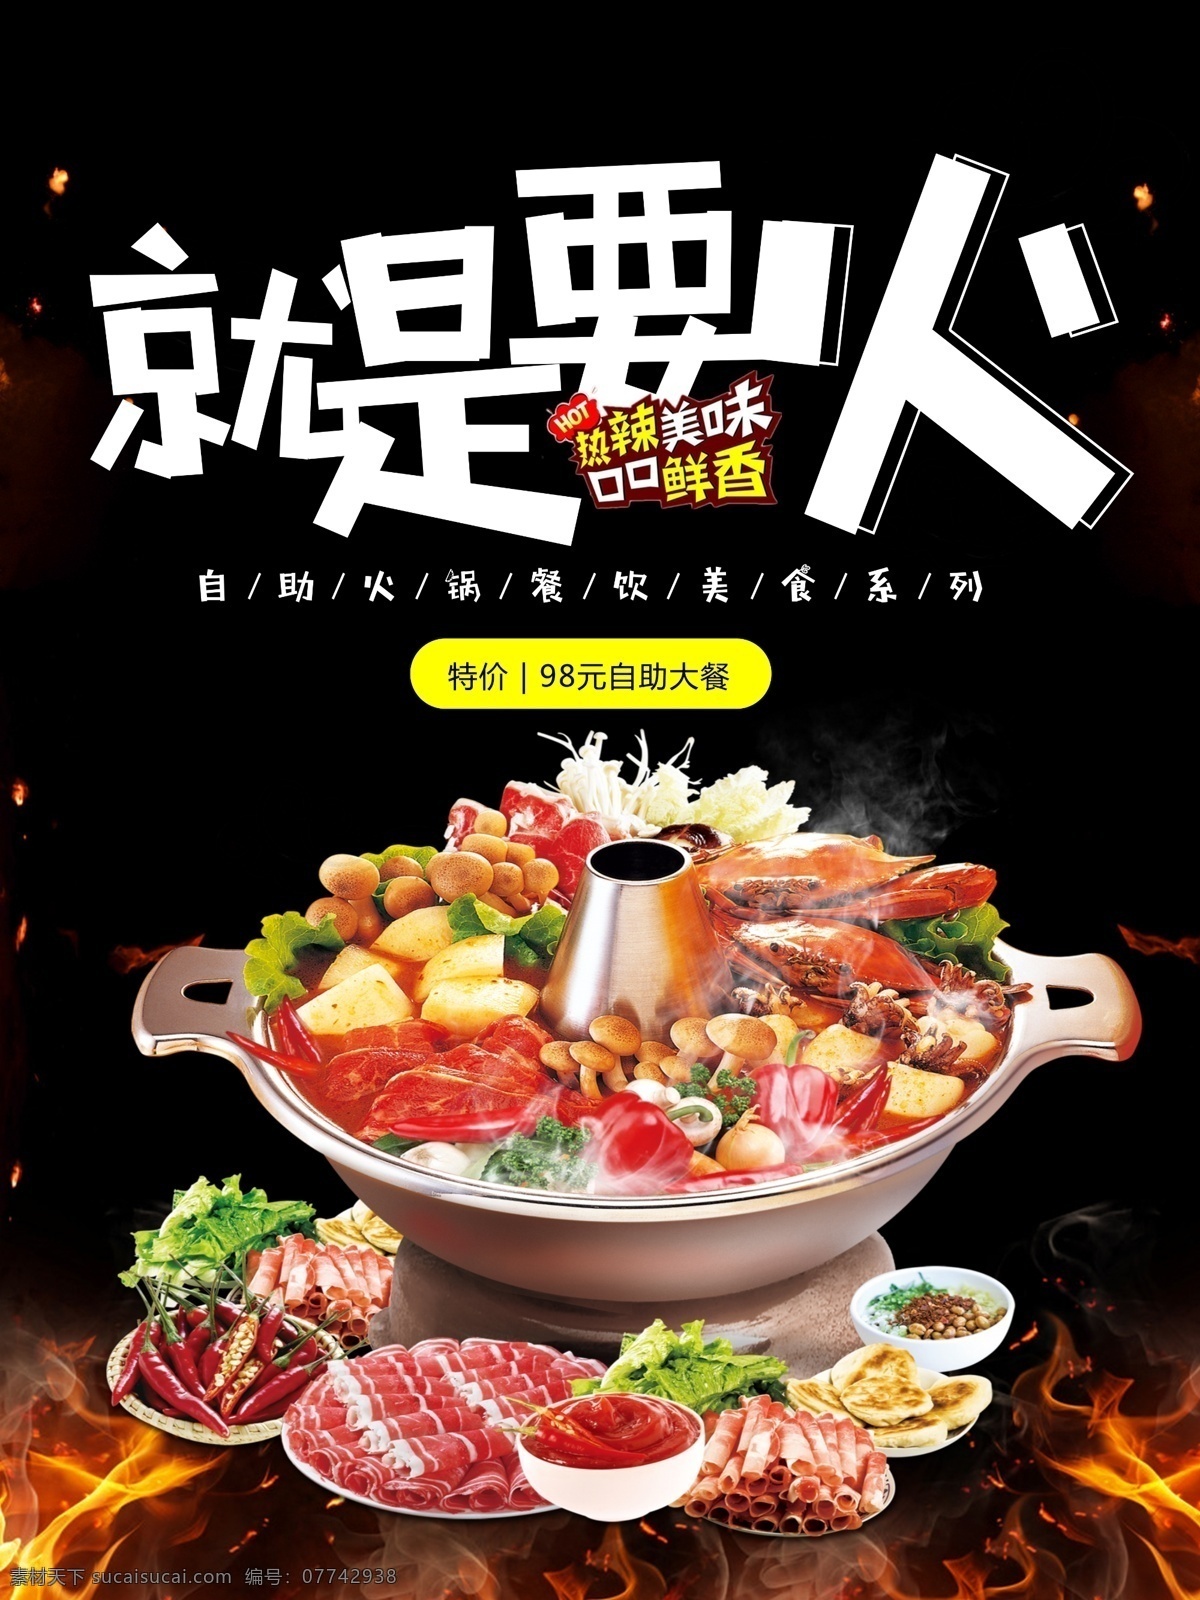 美食 火锅 就是 就是要火锅 海报 黑色背景海报 火焰海报 火锅各种食材 肉 麻酱 展板模板